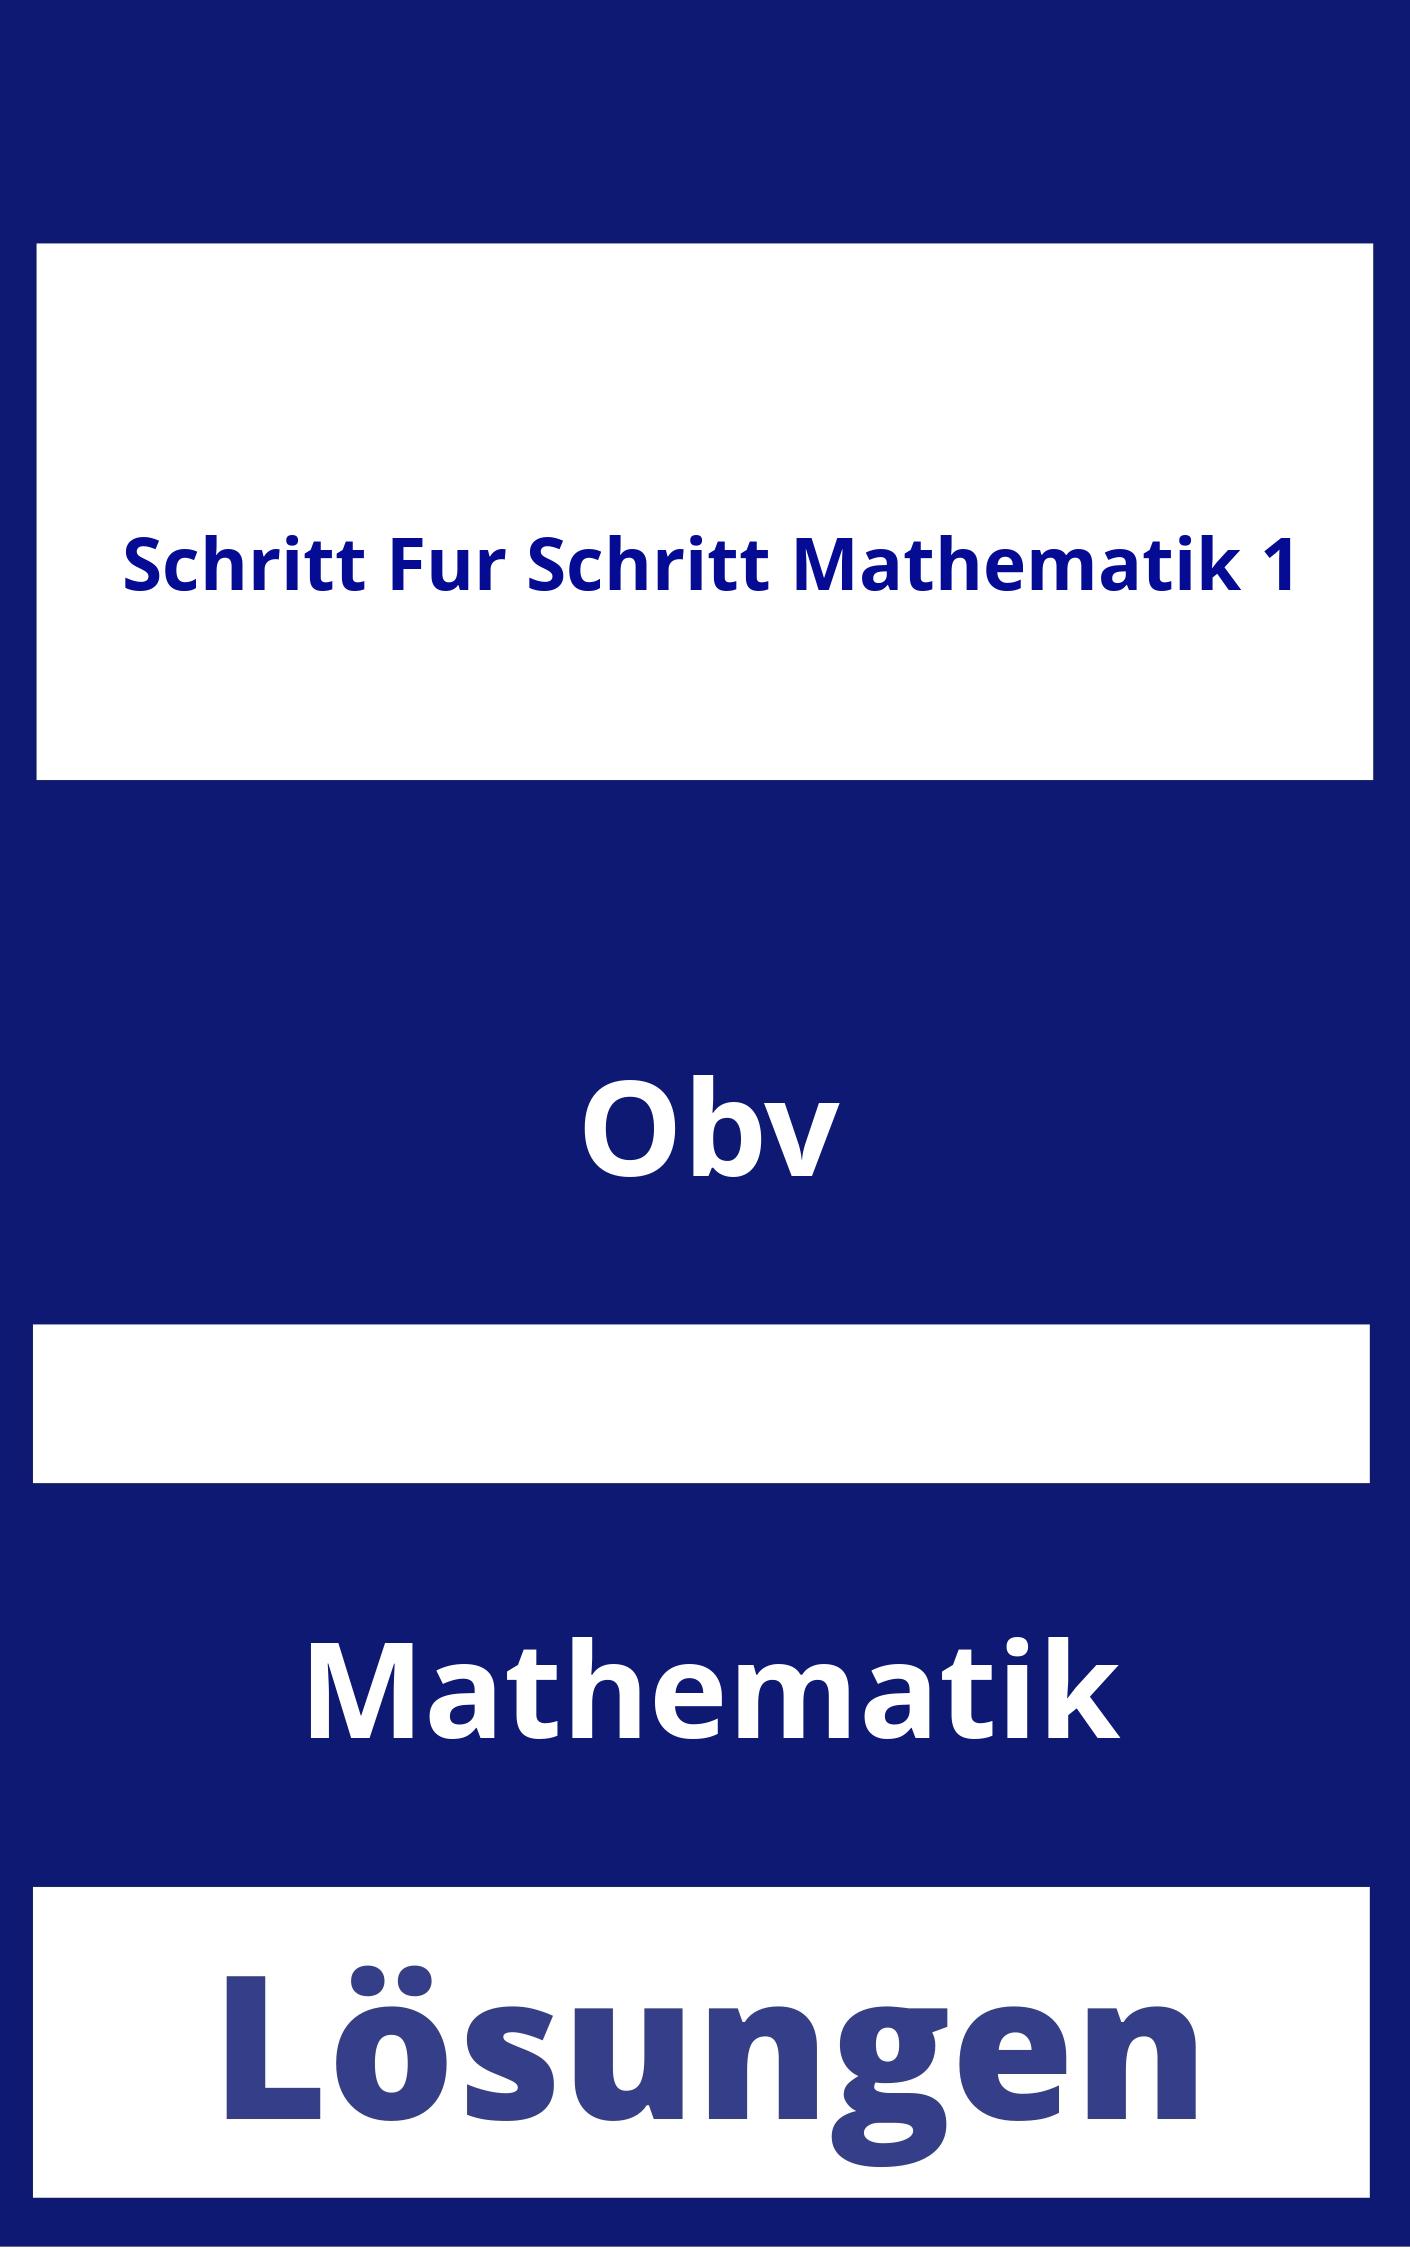 Schritt für Schritt Mathematik 1 Lösungen PDF